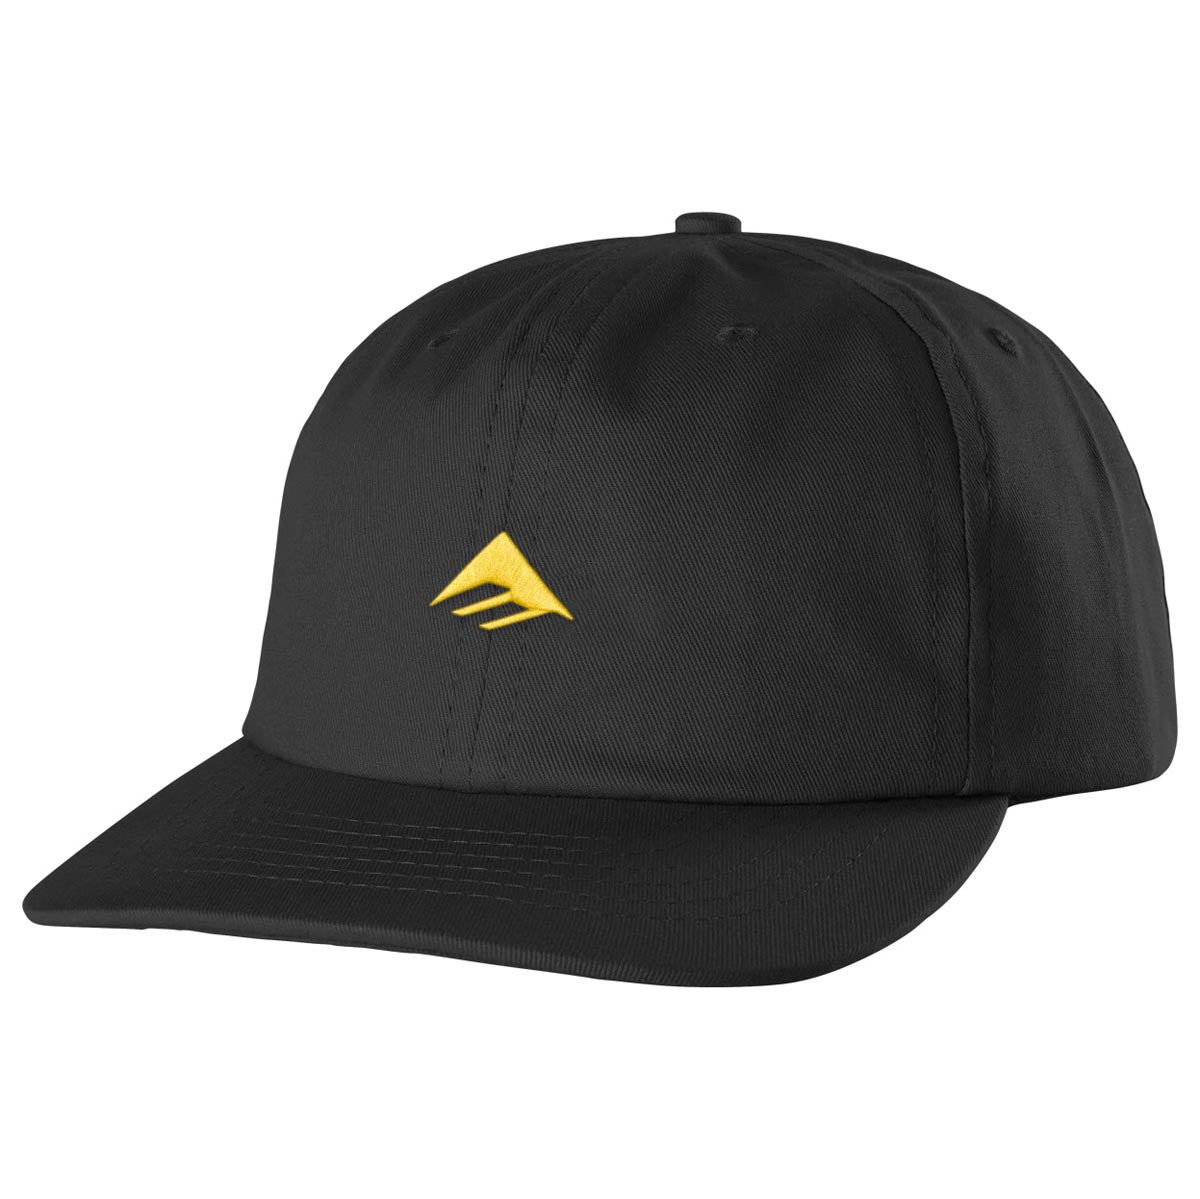 Emerica Micro Triangle Hat - Black image 1